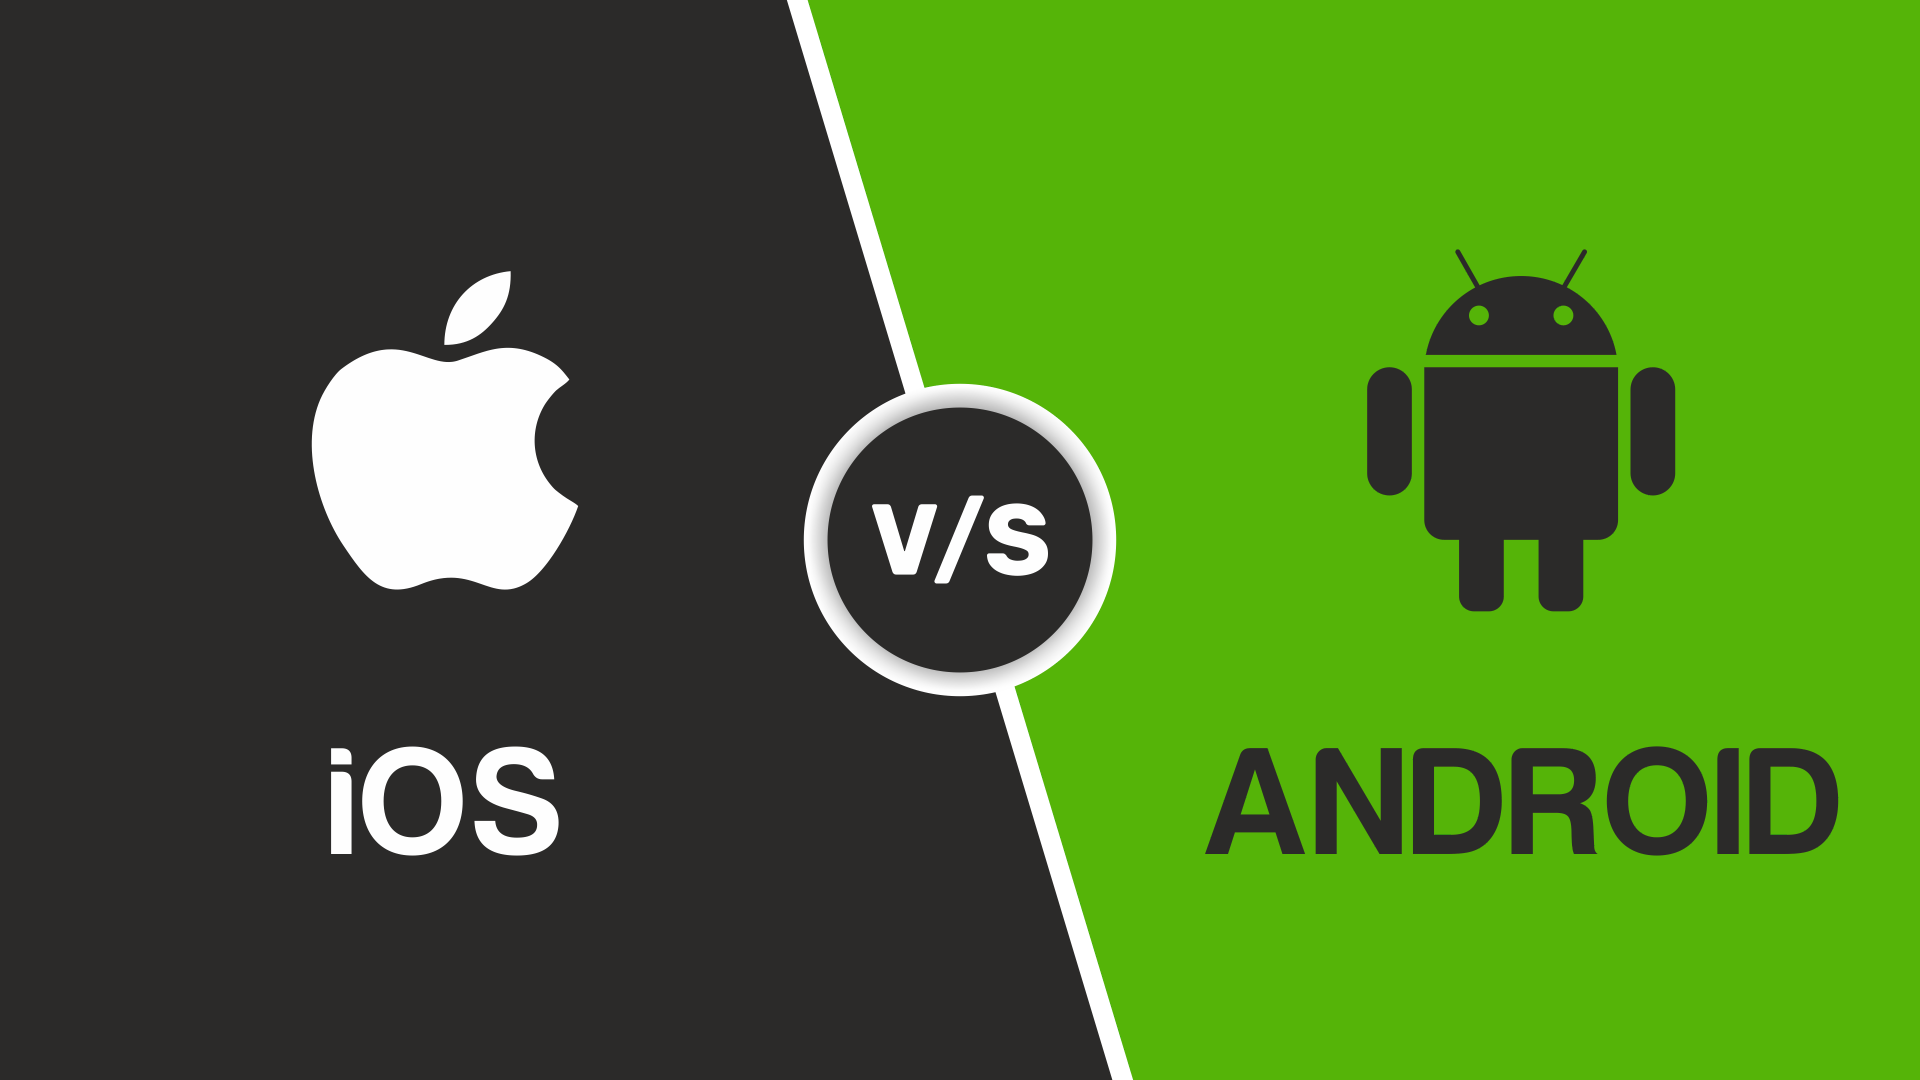 Что лучше, андроид или ios - сравнение мобильных операционных систем тарифкин.ру
что лучше, андроид или ios - сравнение мобильных операционных систем